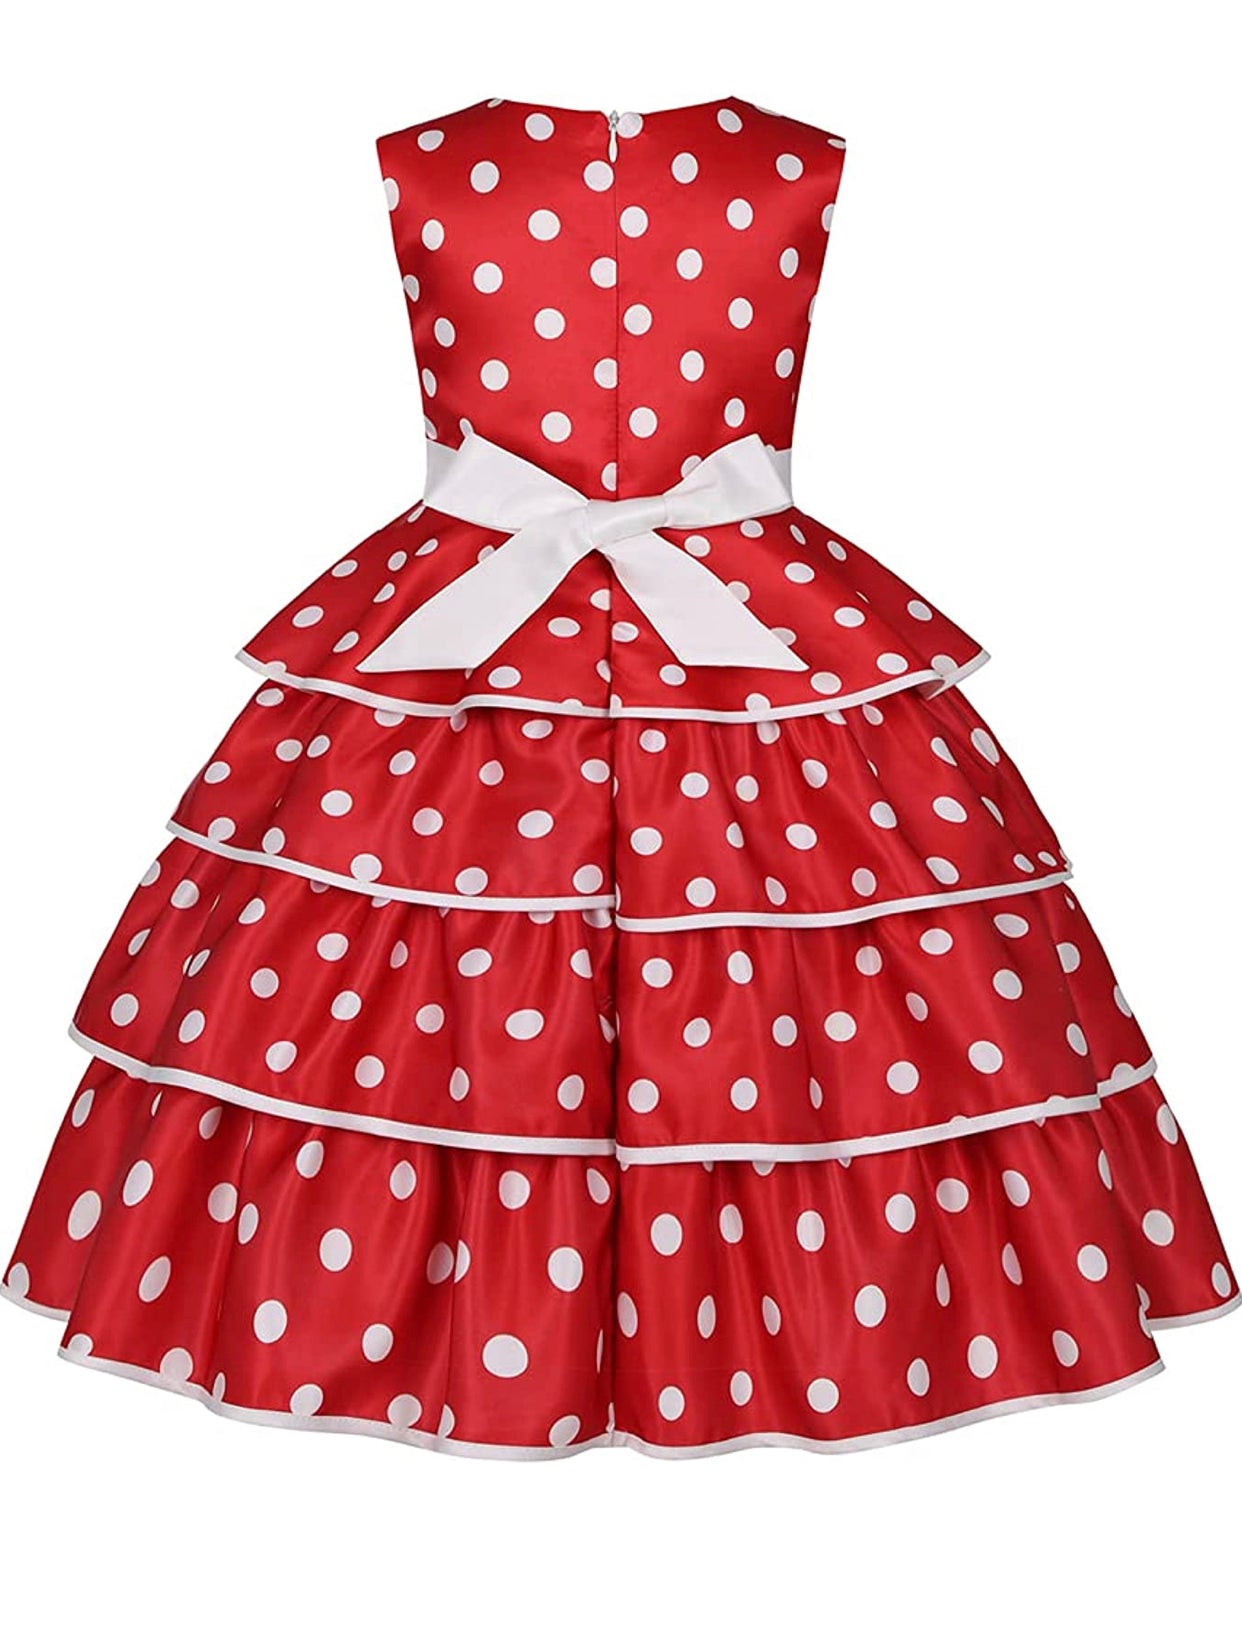 Little Girl’s Formal Red Polka Dot Print Dress, Sizes 2T - 9 years